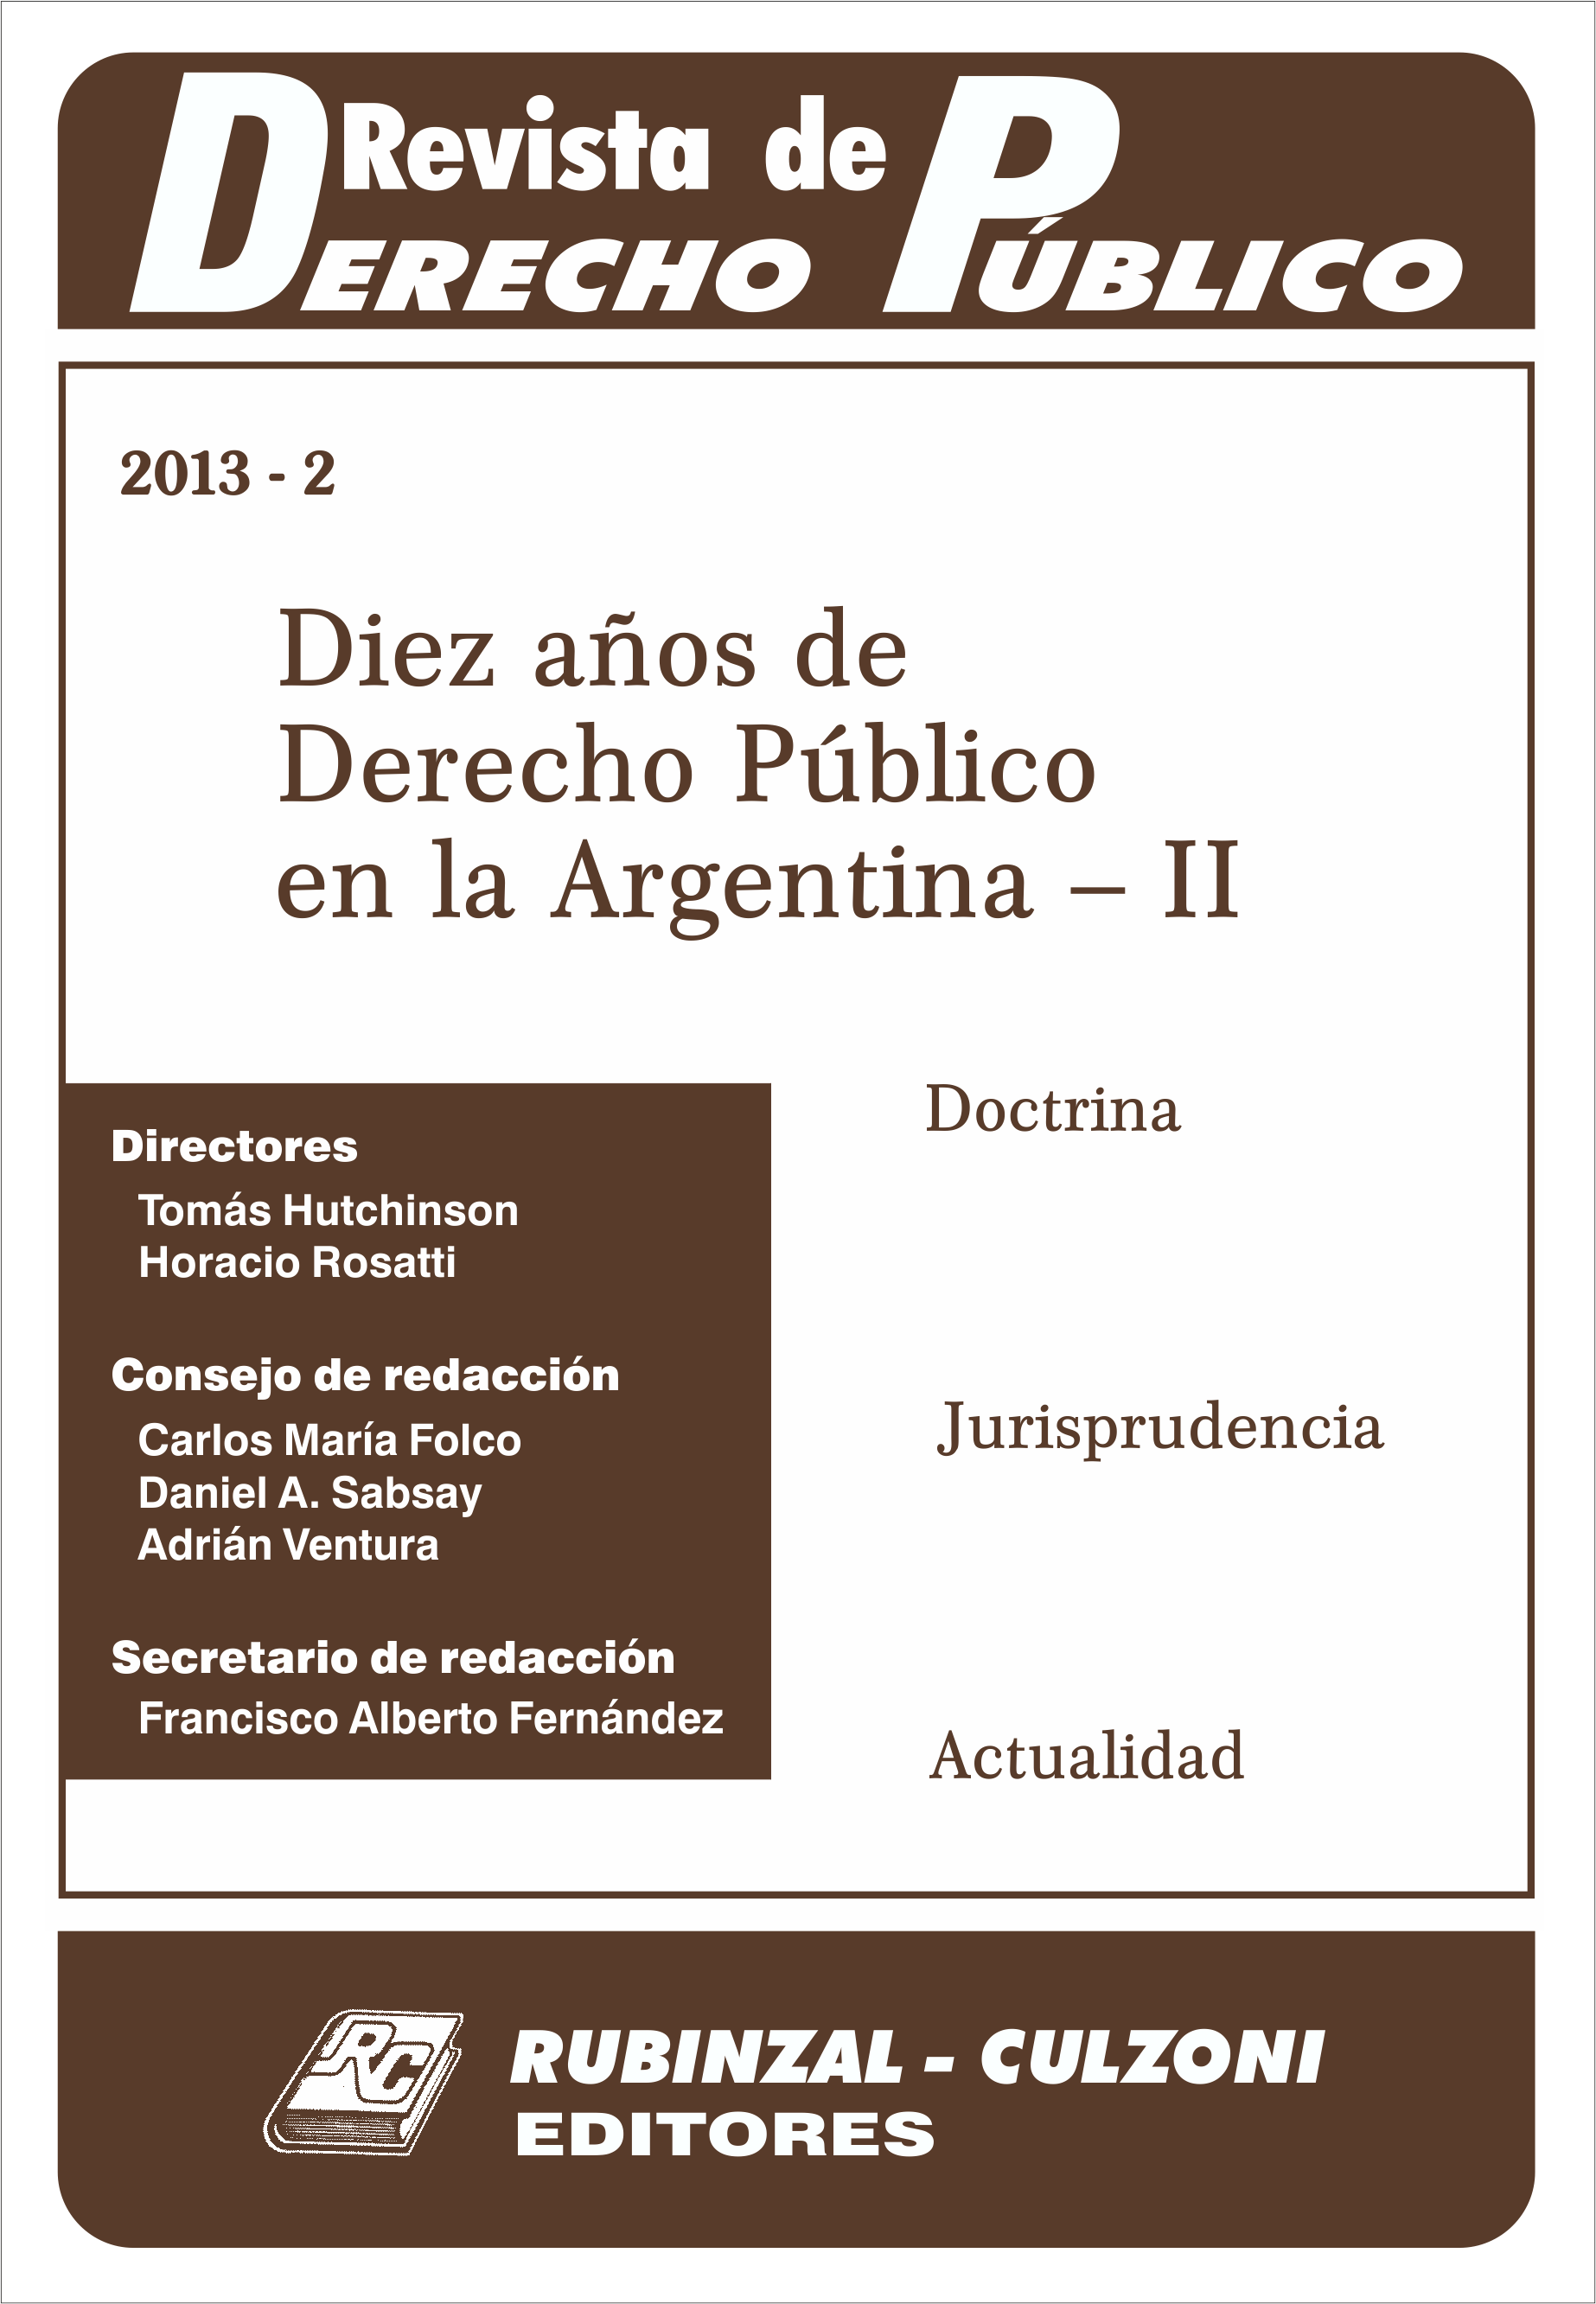 Revista de Derecho Público - Diez años de Derecho Público en la Argentina - II.